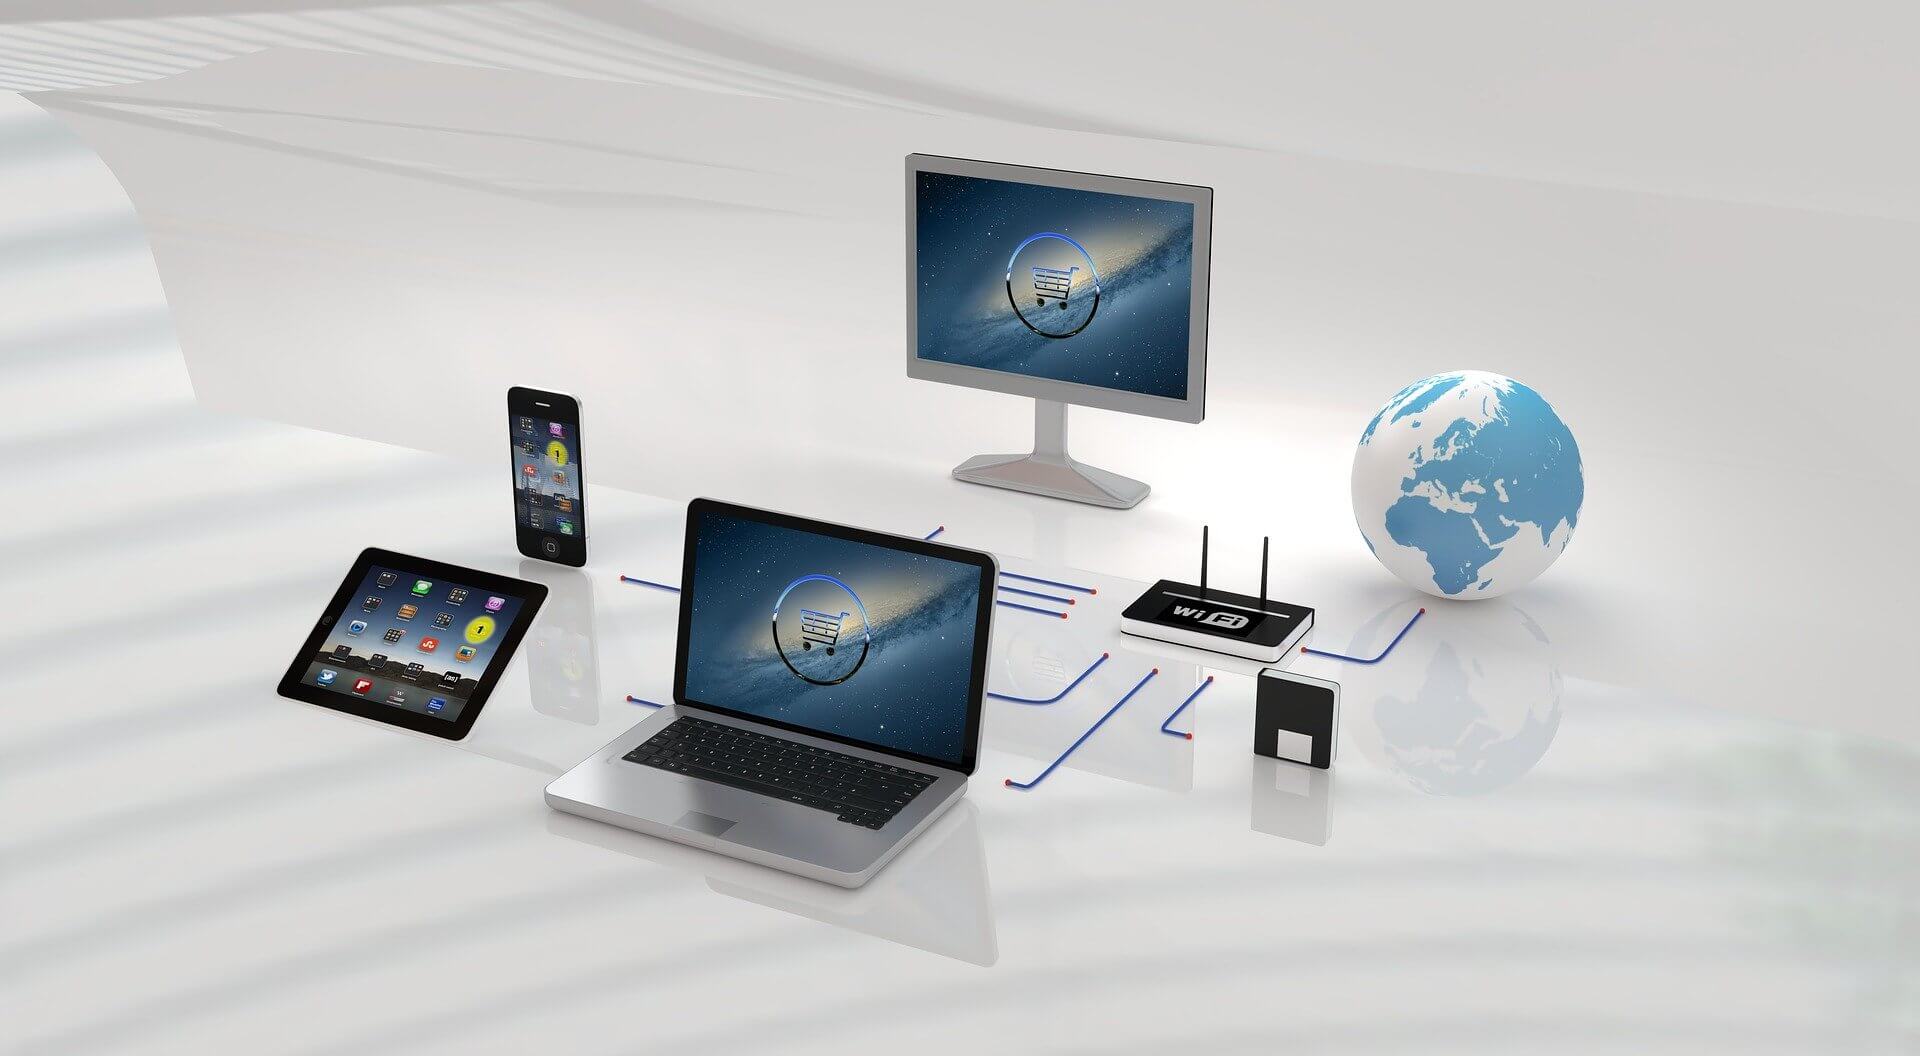 komputery i urządzenia mobilne połączone do jednej sieci internetowej